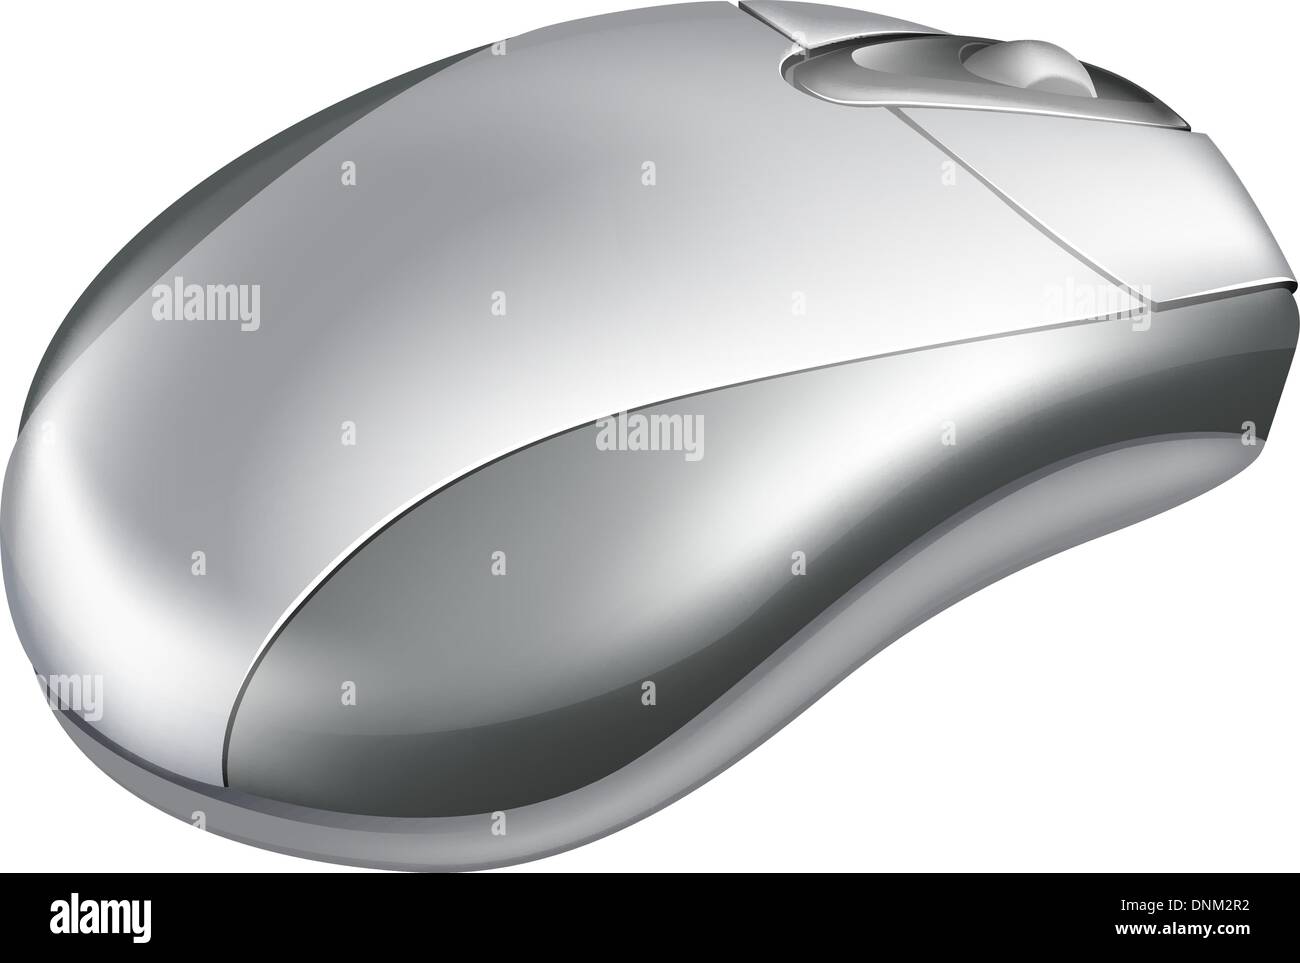 Illustrazione di un argento metallico mouse con rotella Illustrazione Vettoriale